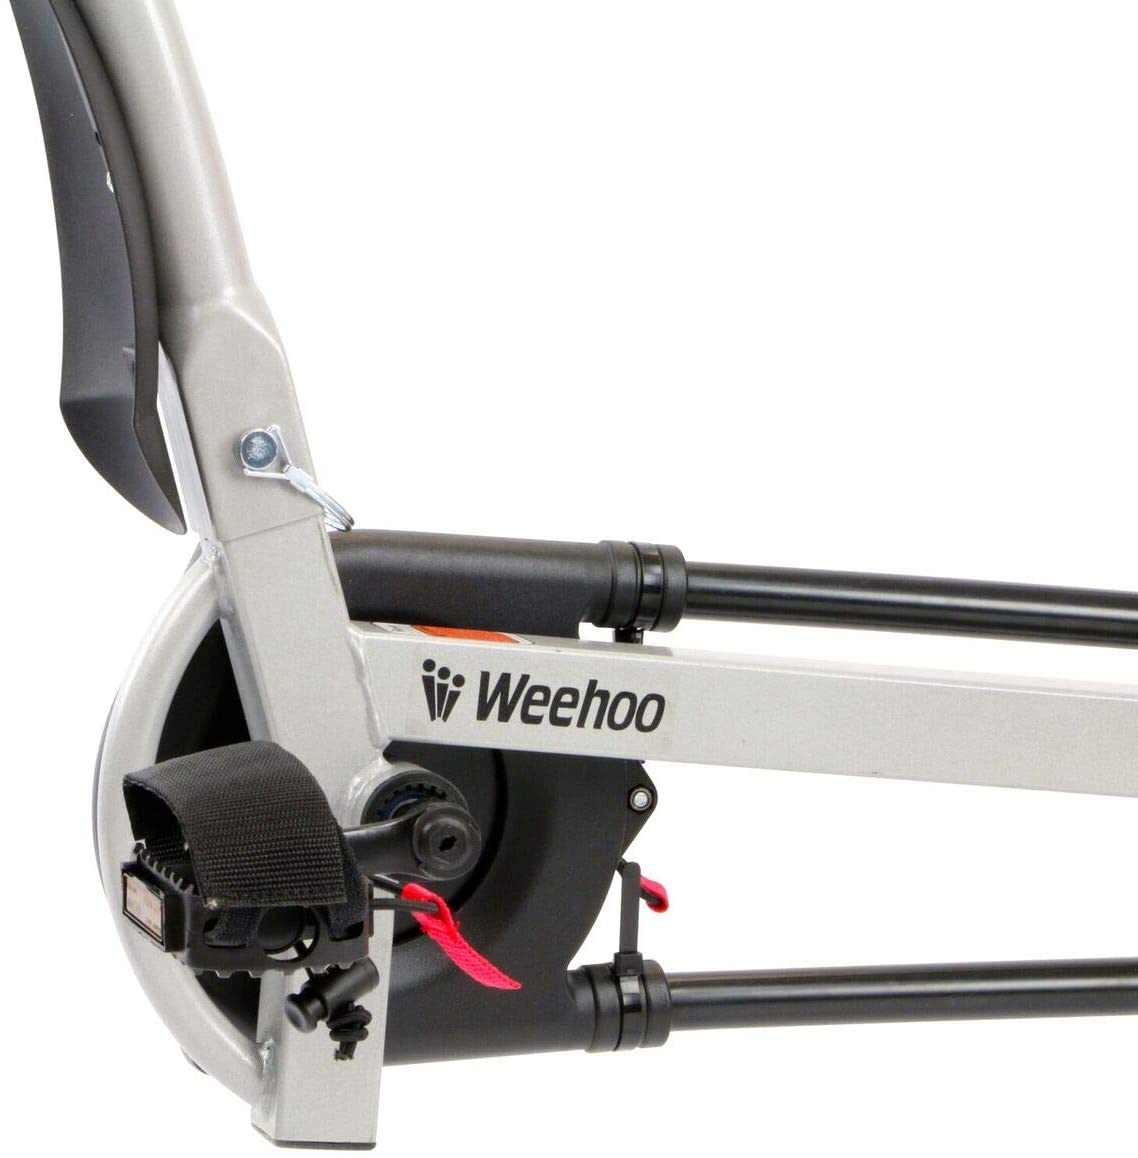  Weehoo Igo - Remolque de Bicicleta para niños de Dos plazas, para Edades de 4 a 9 años, Color Rojo, tamaño Mediano 